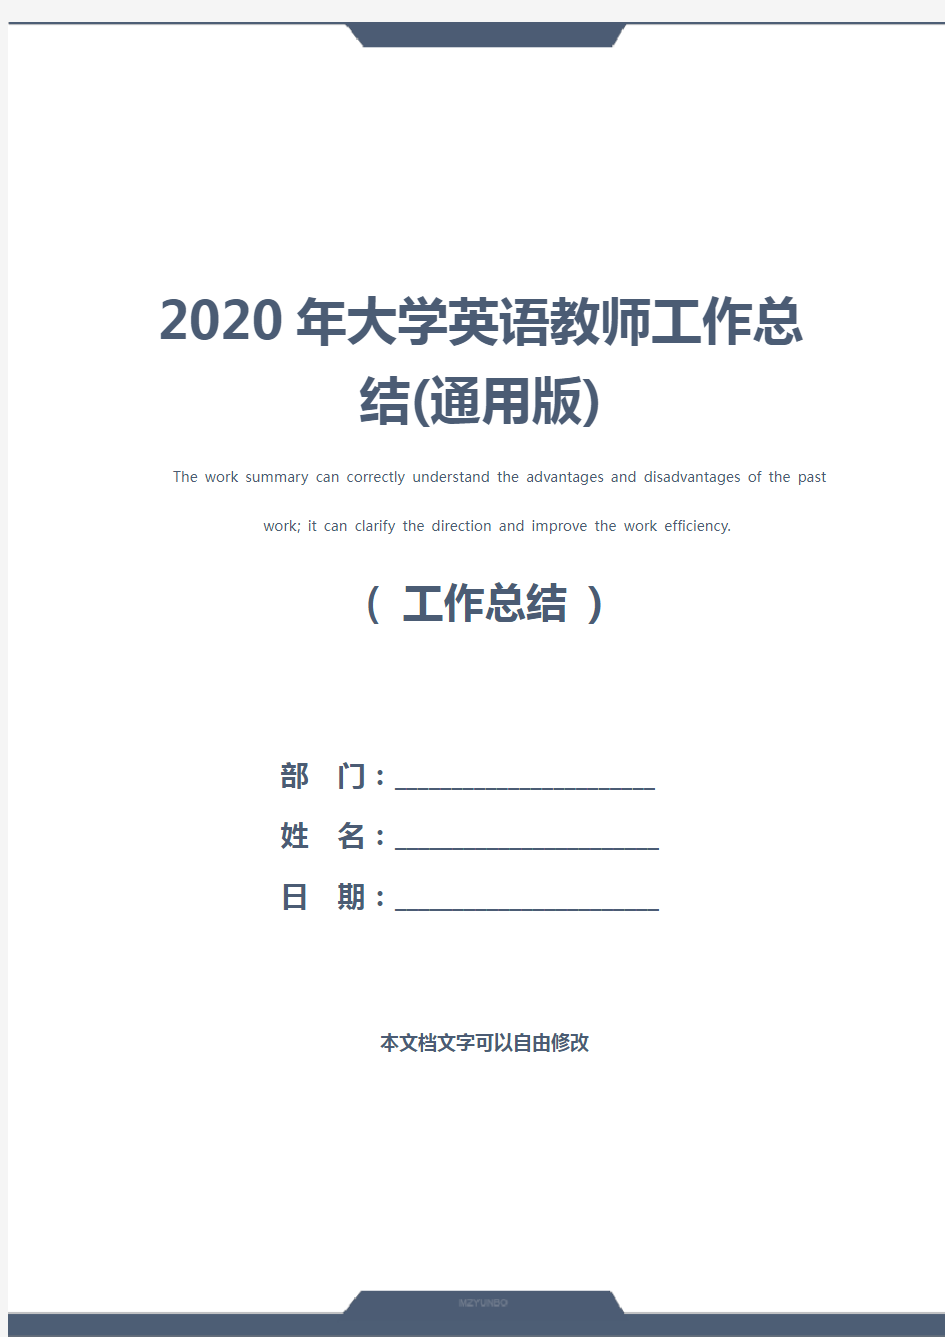 2020年大学英语教师工作总结(通用版)